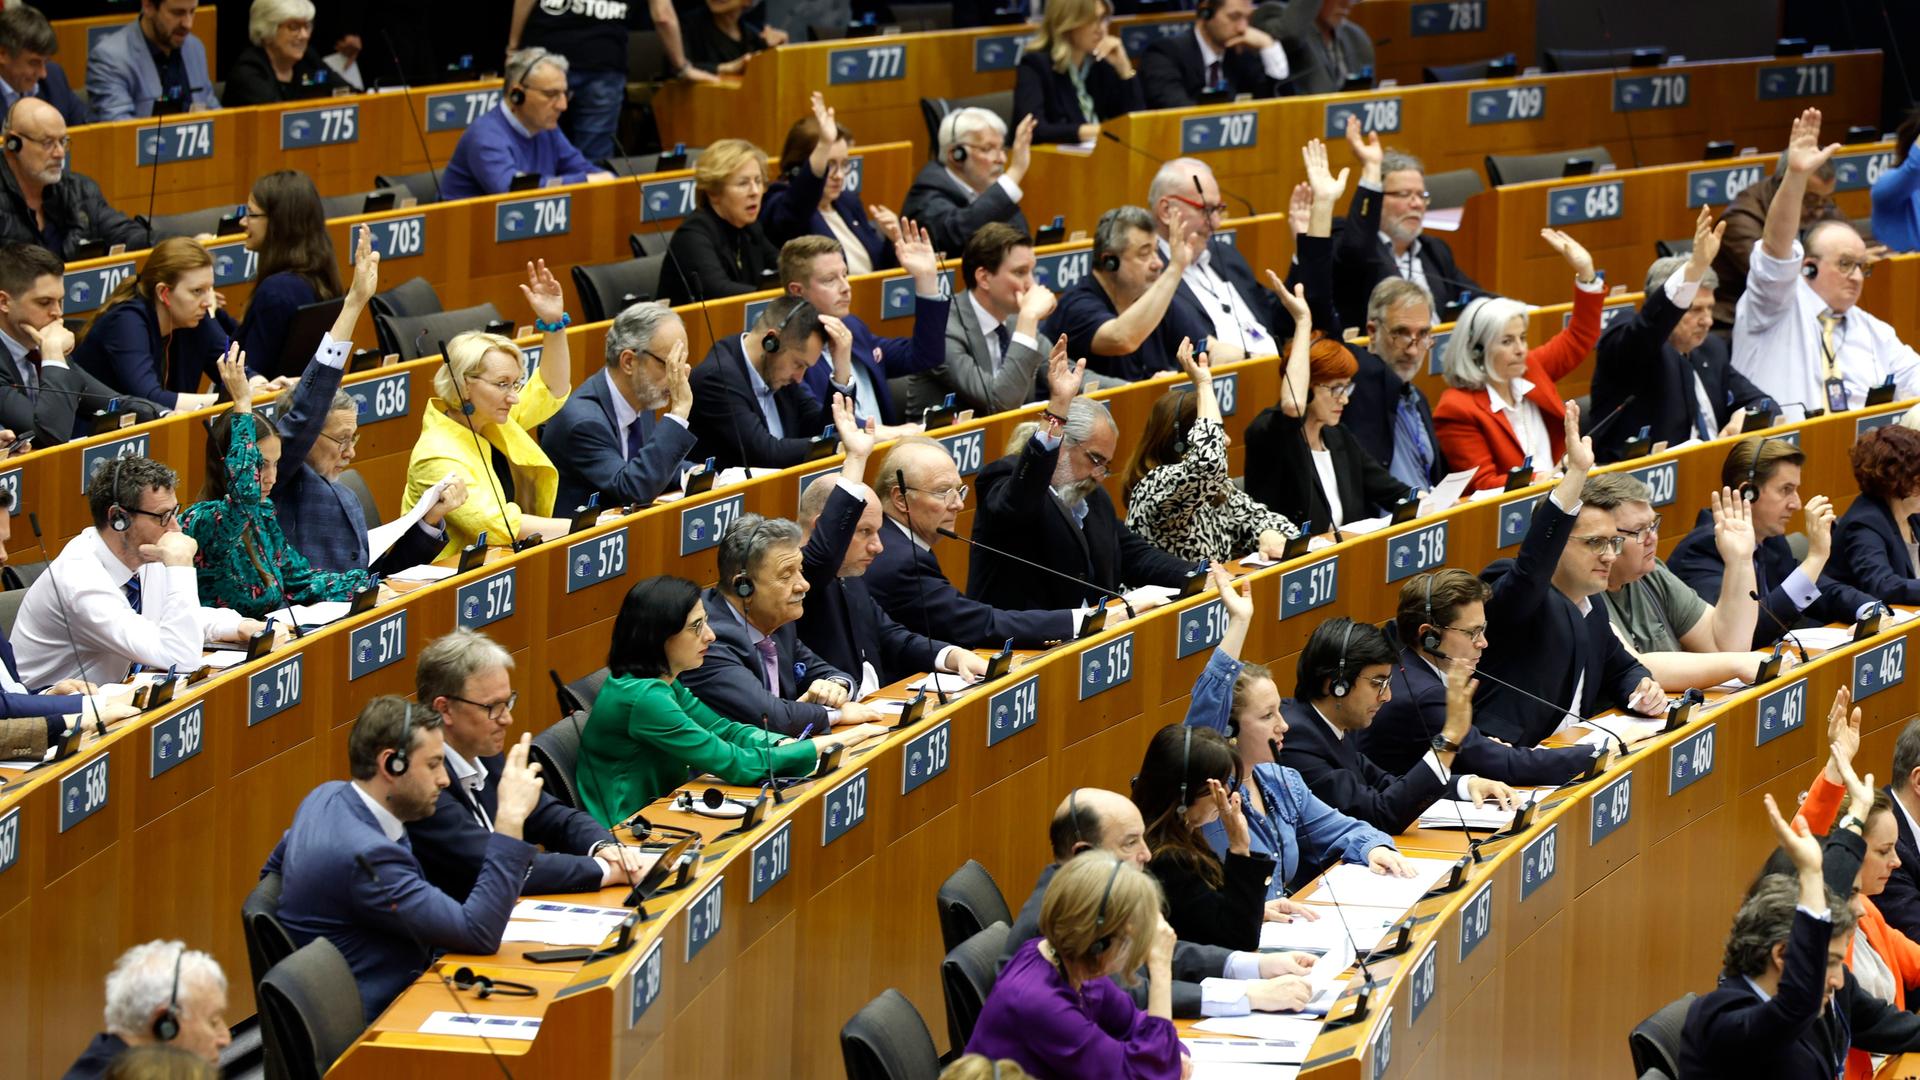 Belgien, Brüssel: Mitglieder des Europäischen Parlaments nehmen an einer Reihe von Abstimmungen teil, während sie an einer Plenarsitzung im Europäischen Parlament teilnehmen.